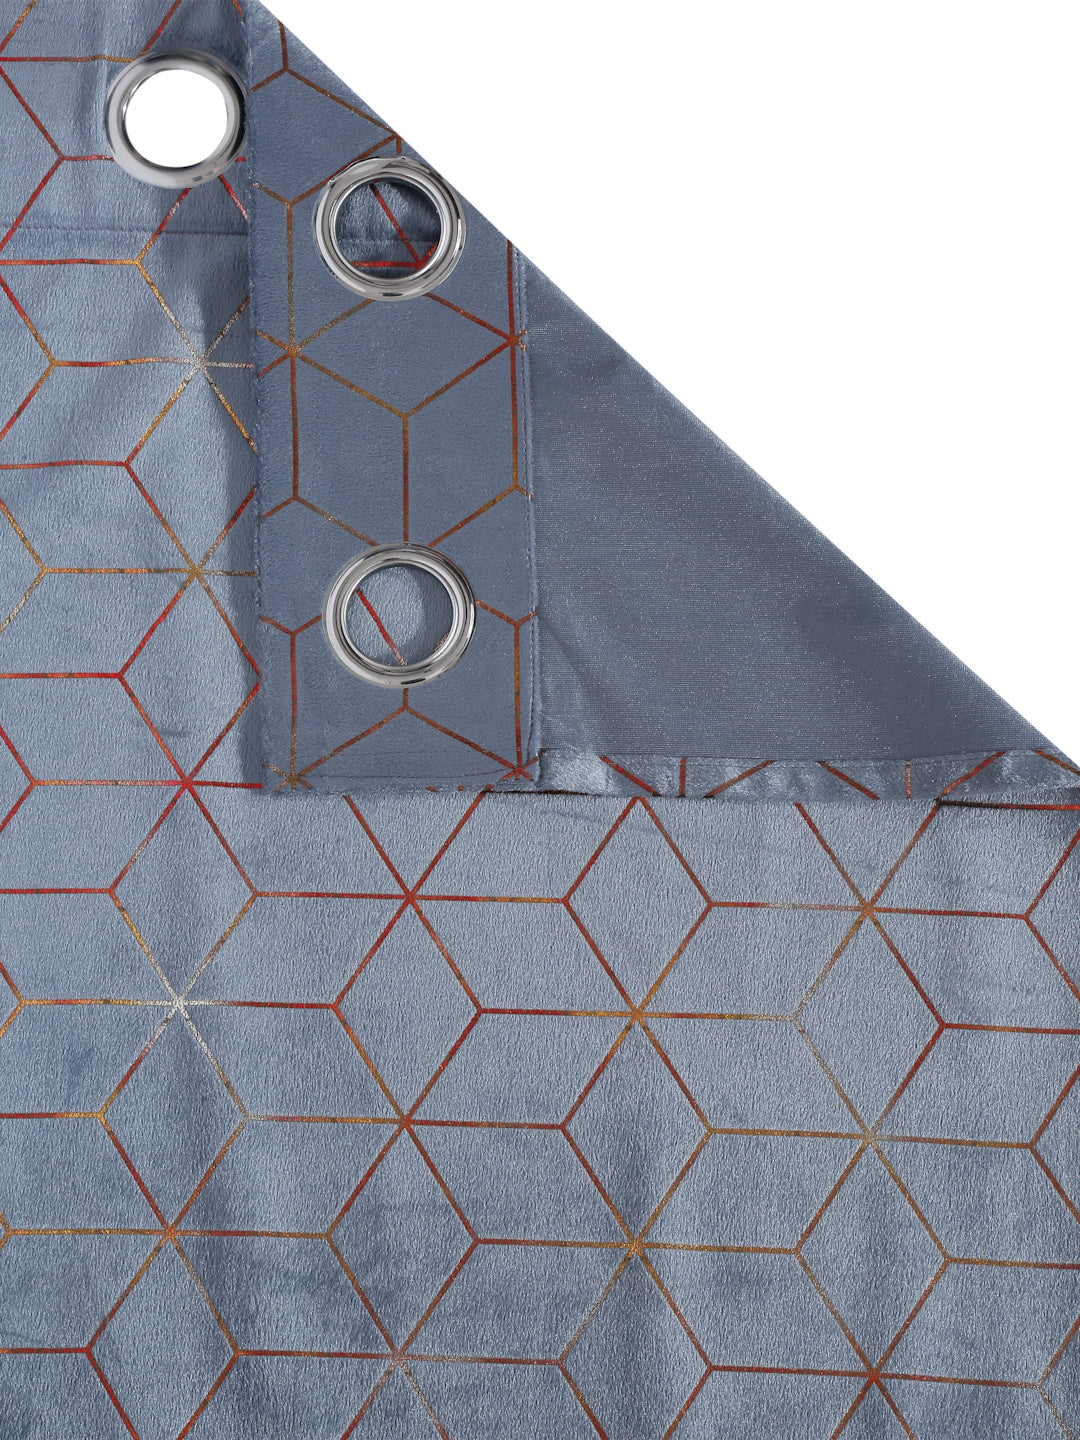 Pack of 2 Velvet Regular Geometric Foil Curtains